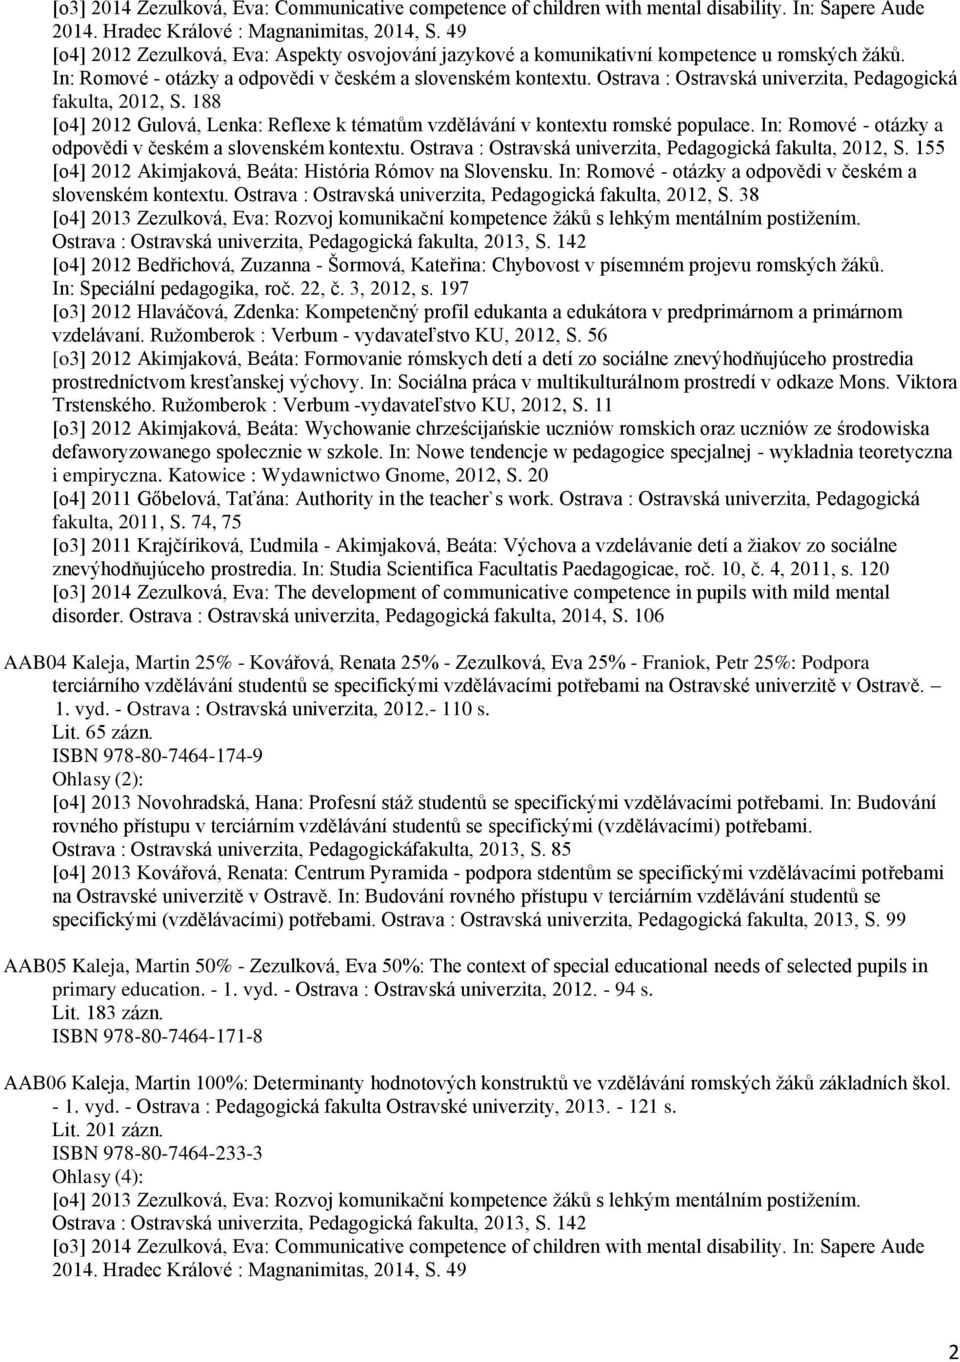 Ostrava : Ostravská univerzita, Pedagogická fakulta, 2012, S. 188 [o4] 2012 Gulová, Lenka: Reflexe k tématům vzdělávání v kontextu romské populace.